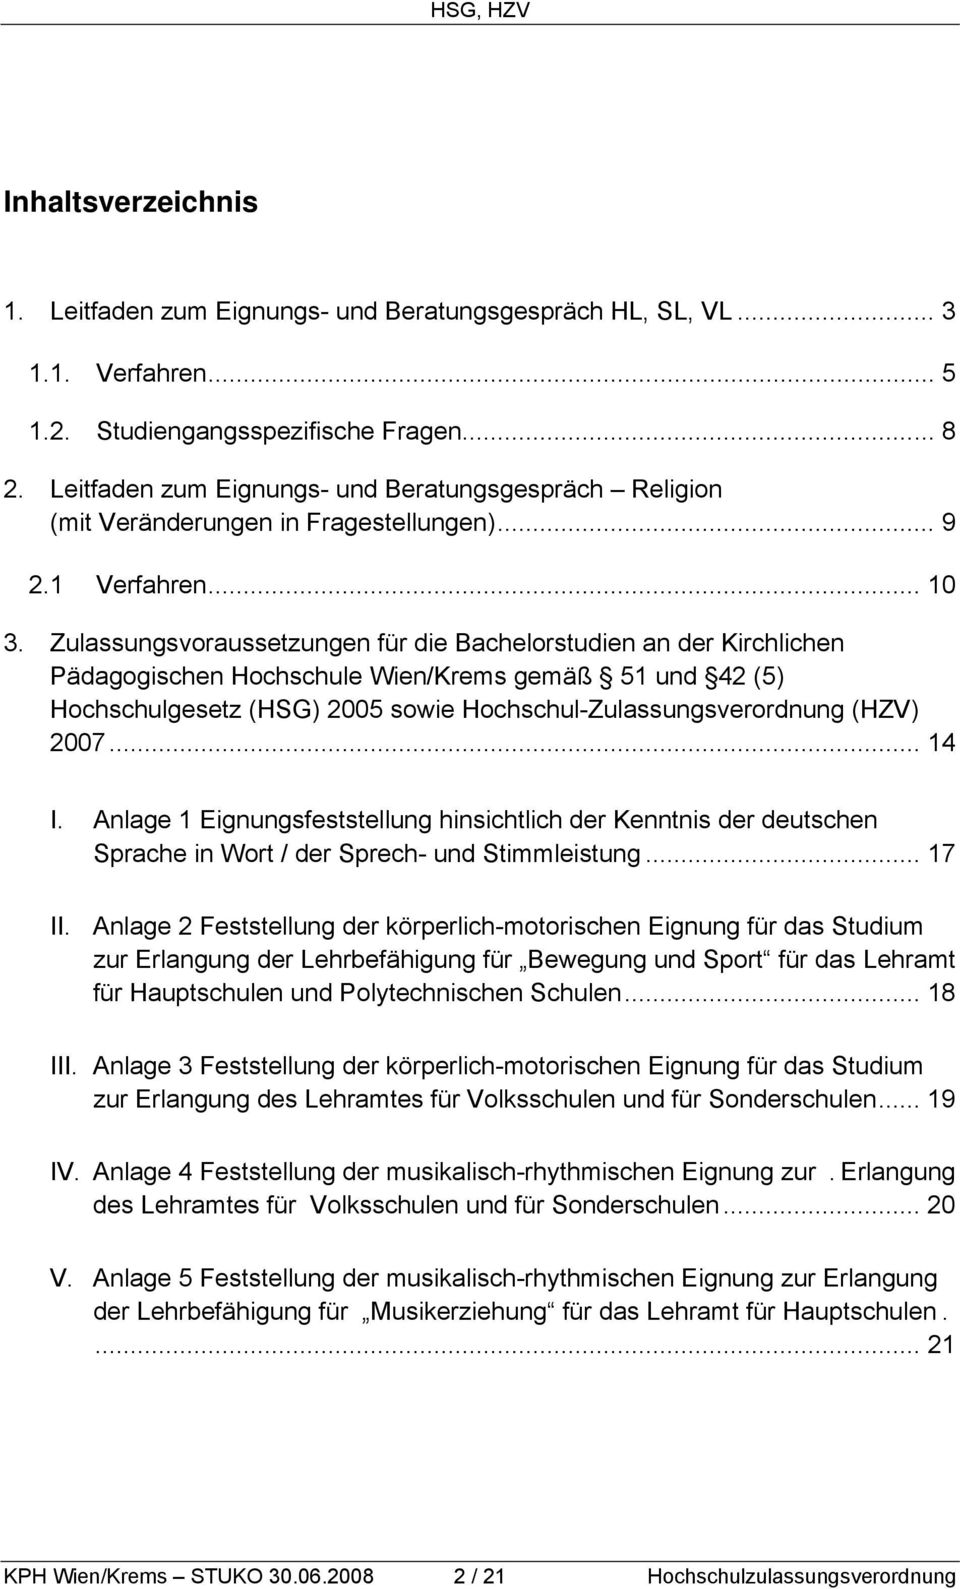 Zulassungsvoraussetzungen für die Bachelorstudien an der Kirchlichen Pädagogischen Hochschule Wien/Krems gemäß 51 und 42 (5) Hochschulgesetz (HSG) 2005 sowie Hochschul-Zulassungsverordnung (HZV) 2007.